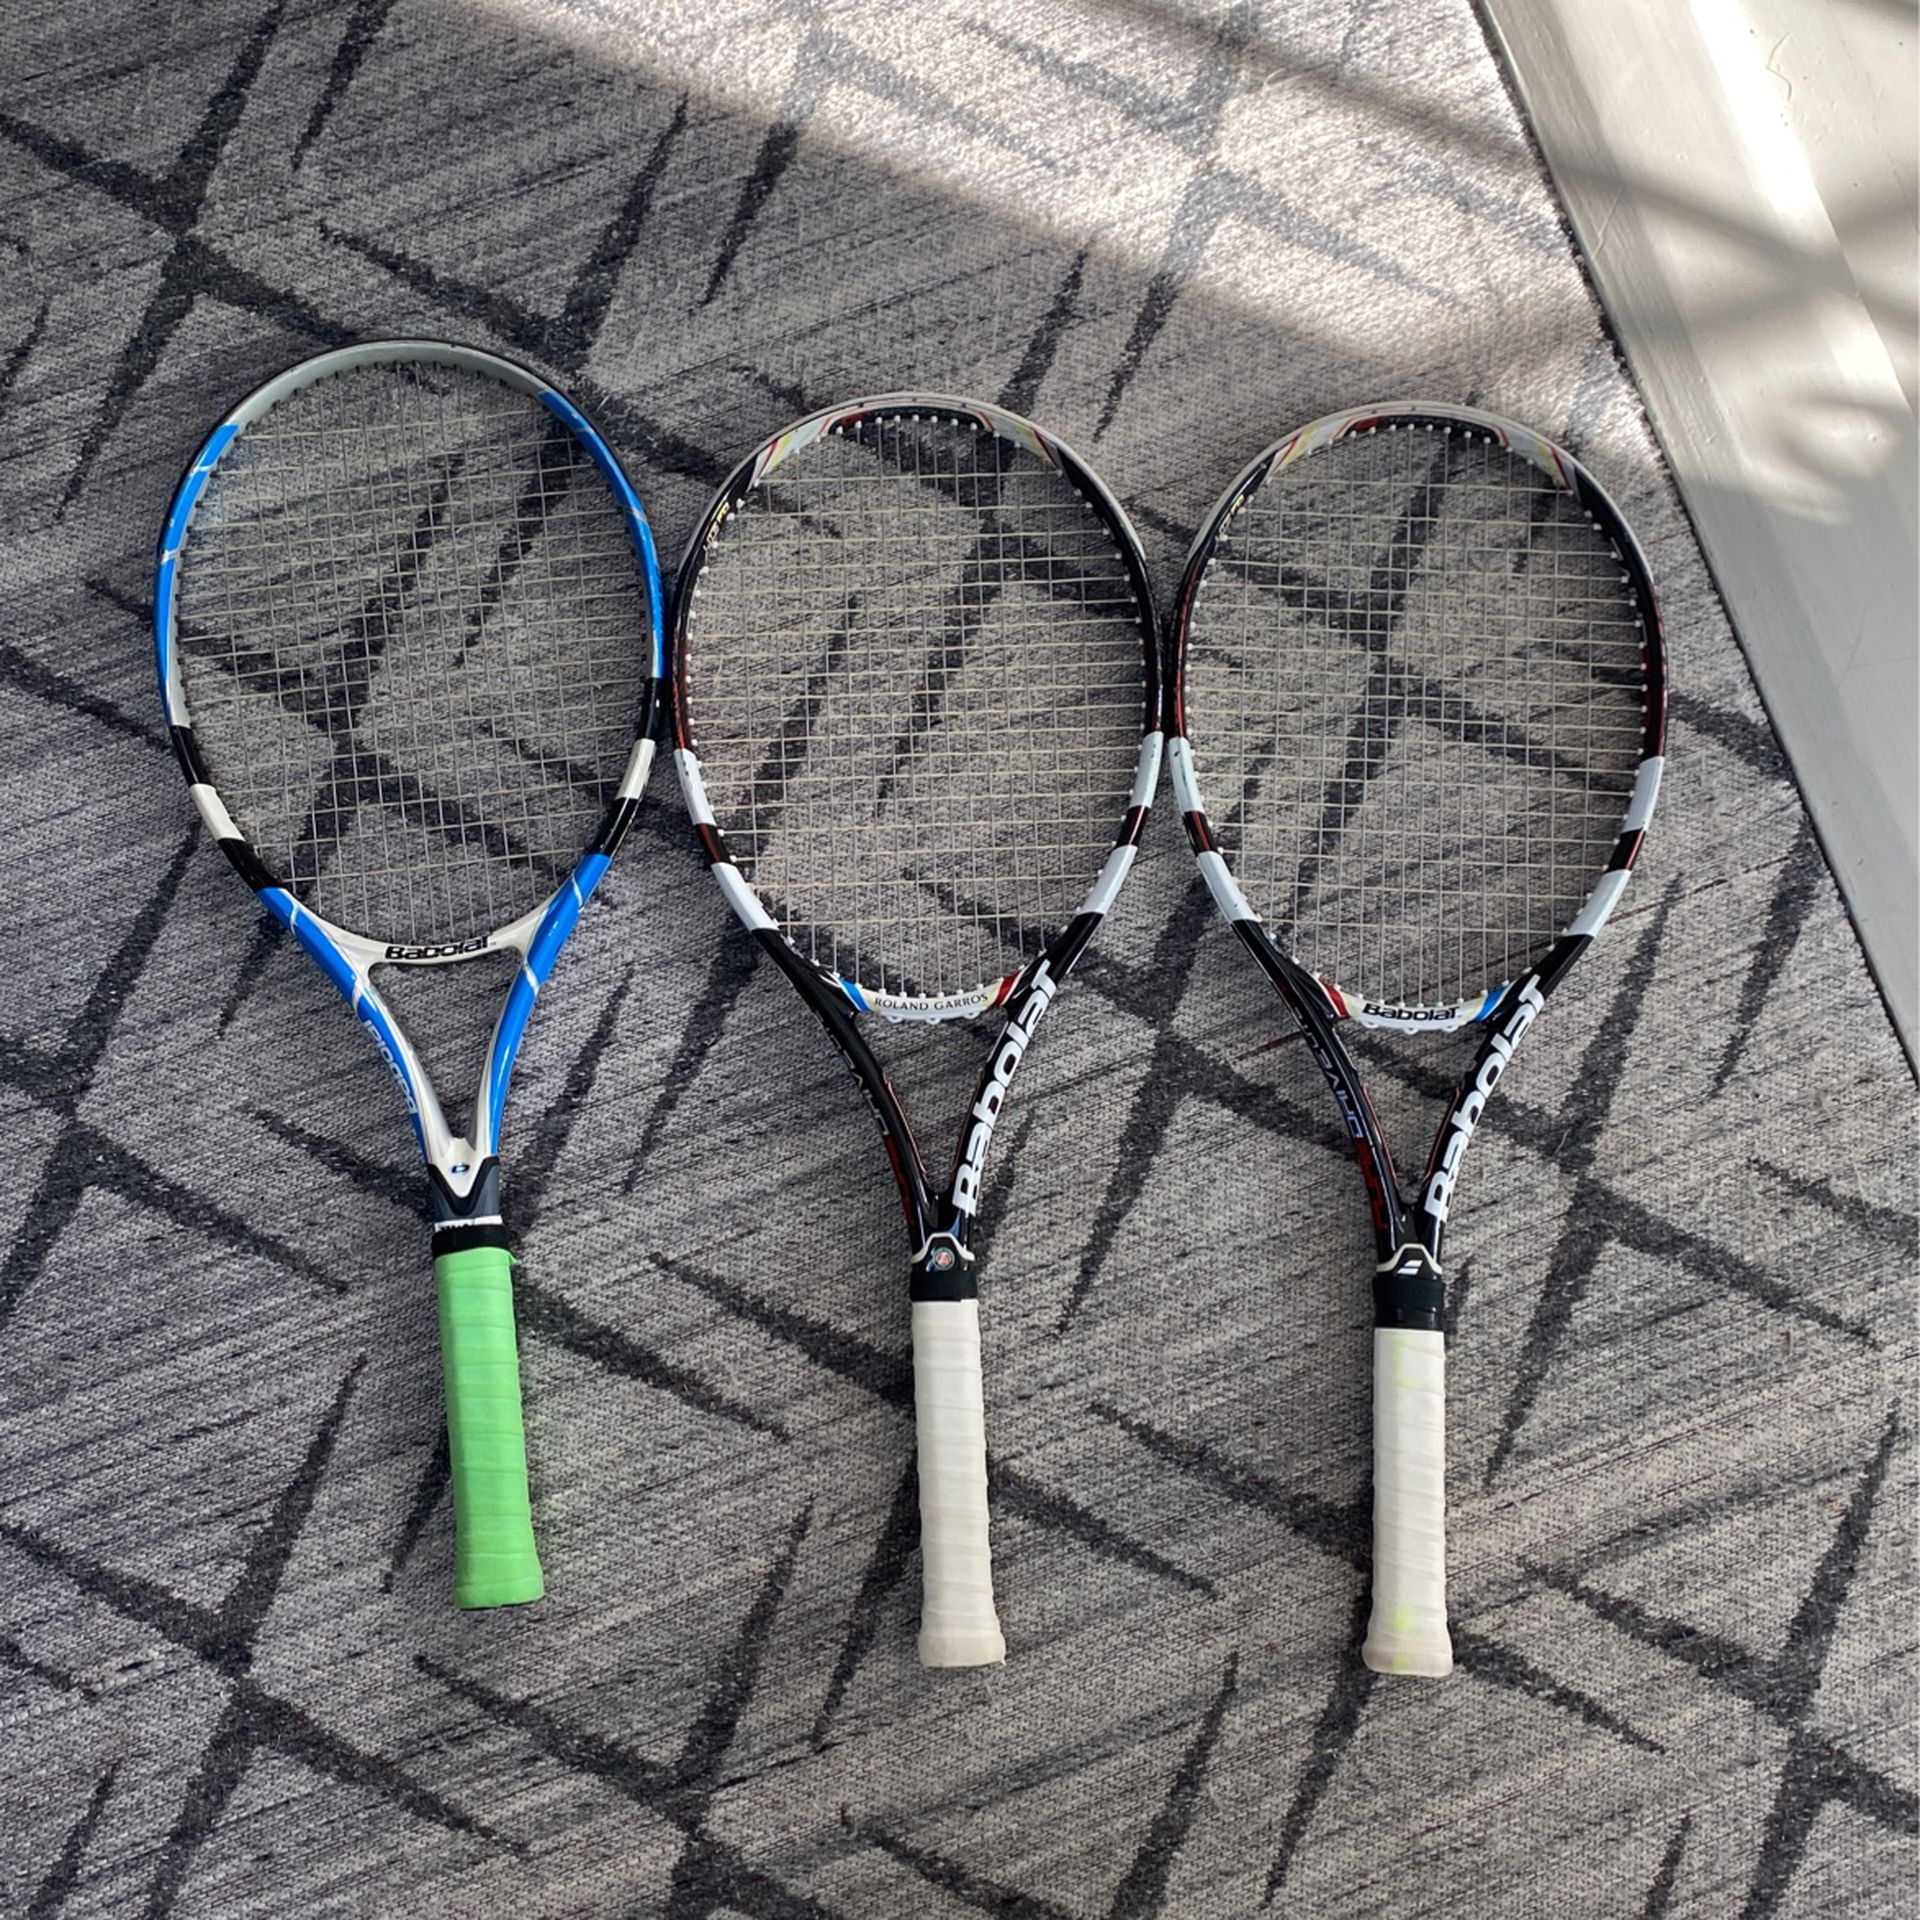 3 Babolat Tennis Rackets